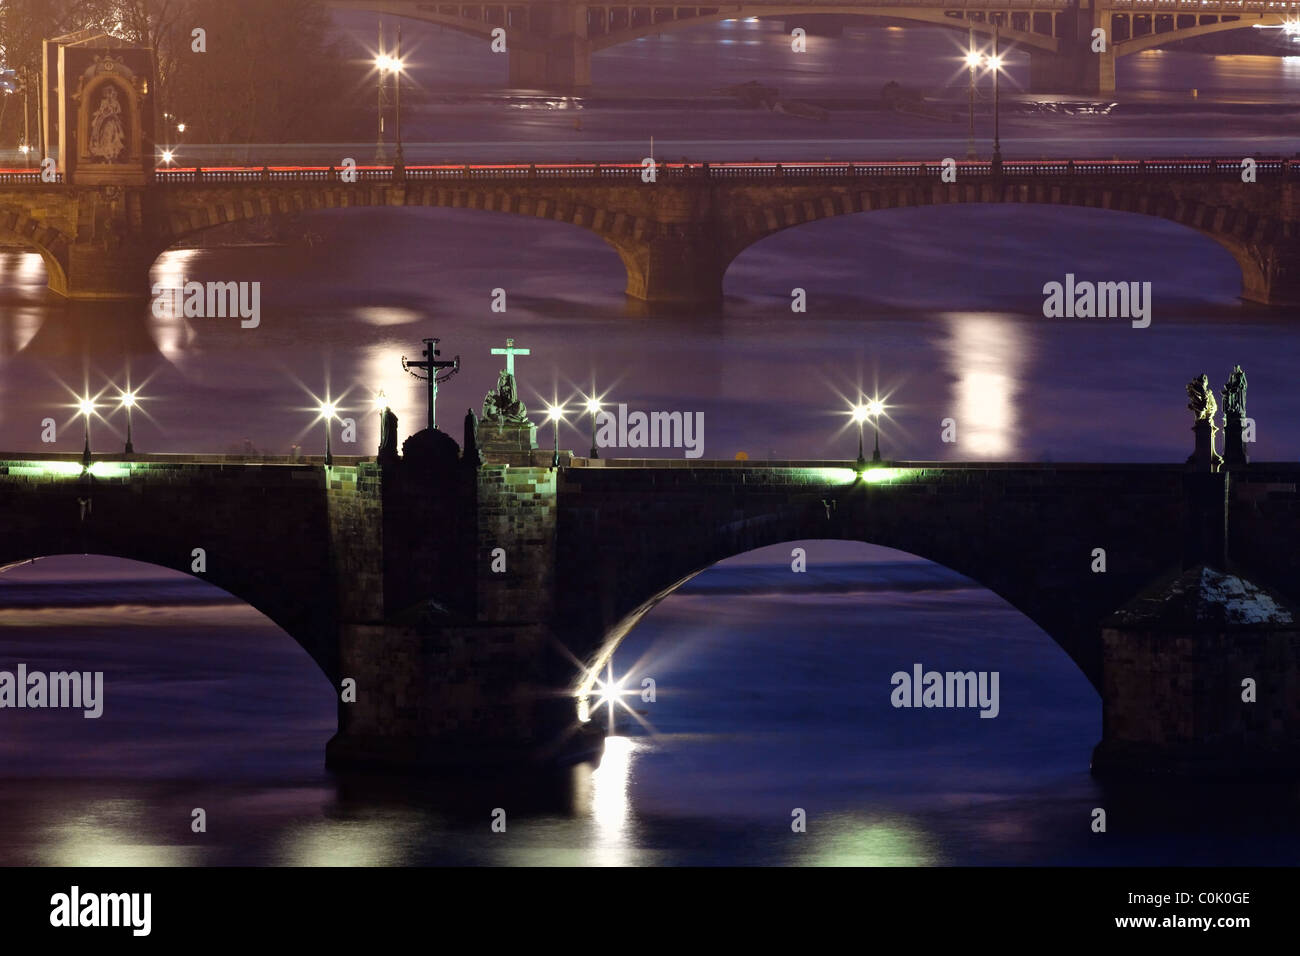 Praga - ponti sul fiume Moldava al crepuscolo - Charles Bridge a fuoco Foto Stock